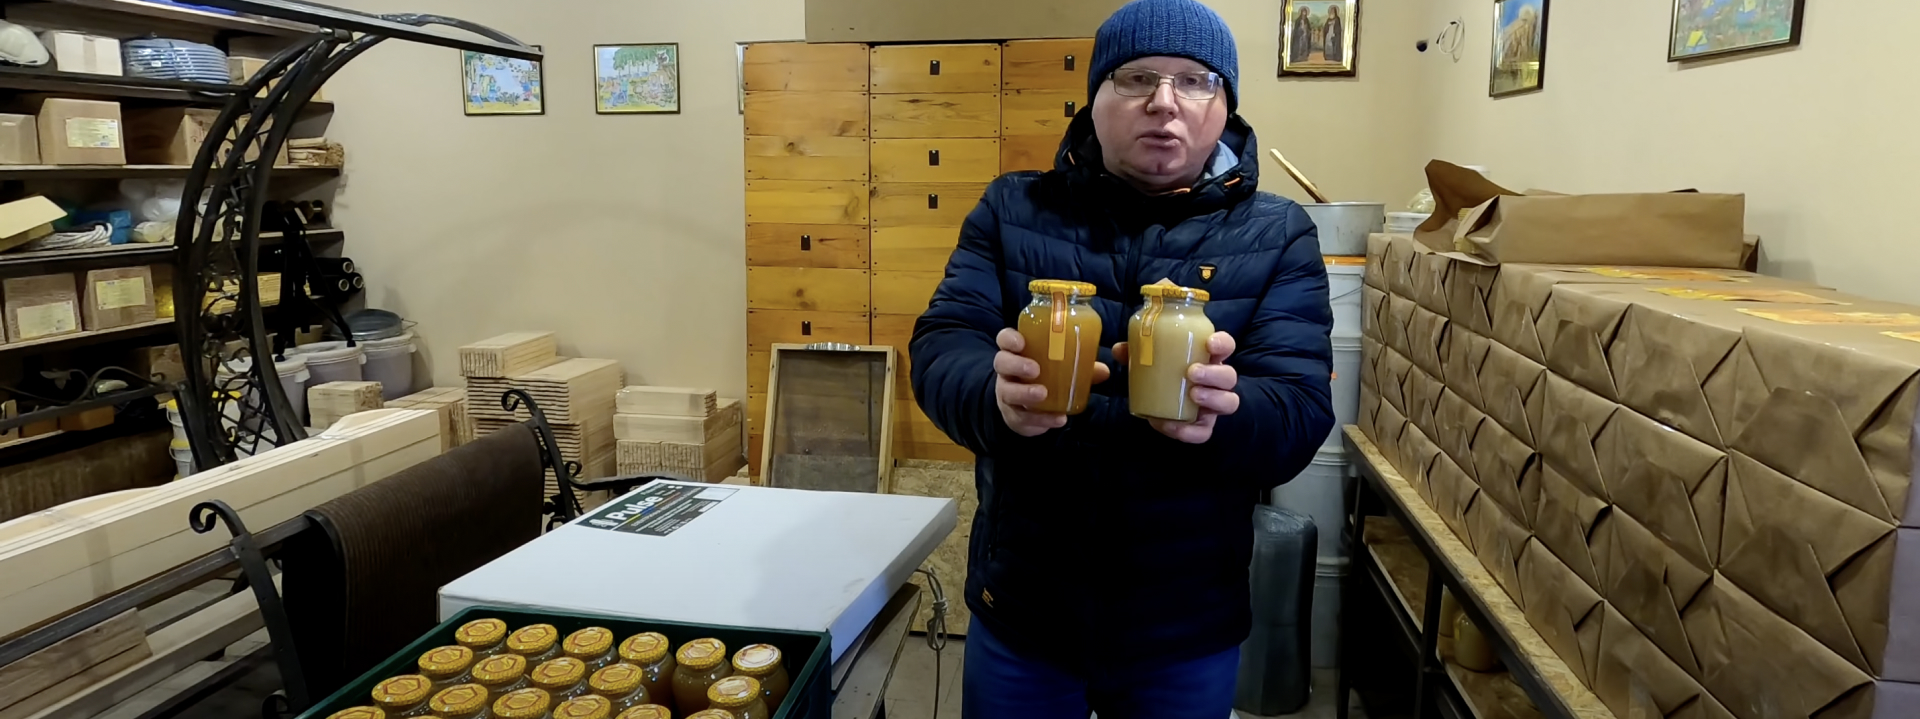 Александр Пасечник, 46 лет, пчеловод-блогер и заготовитель